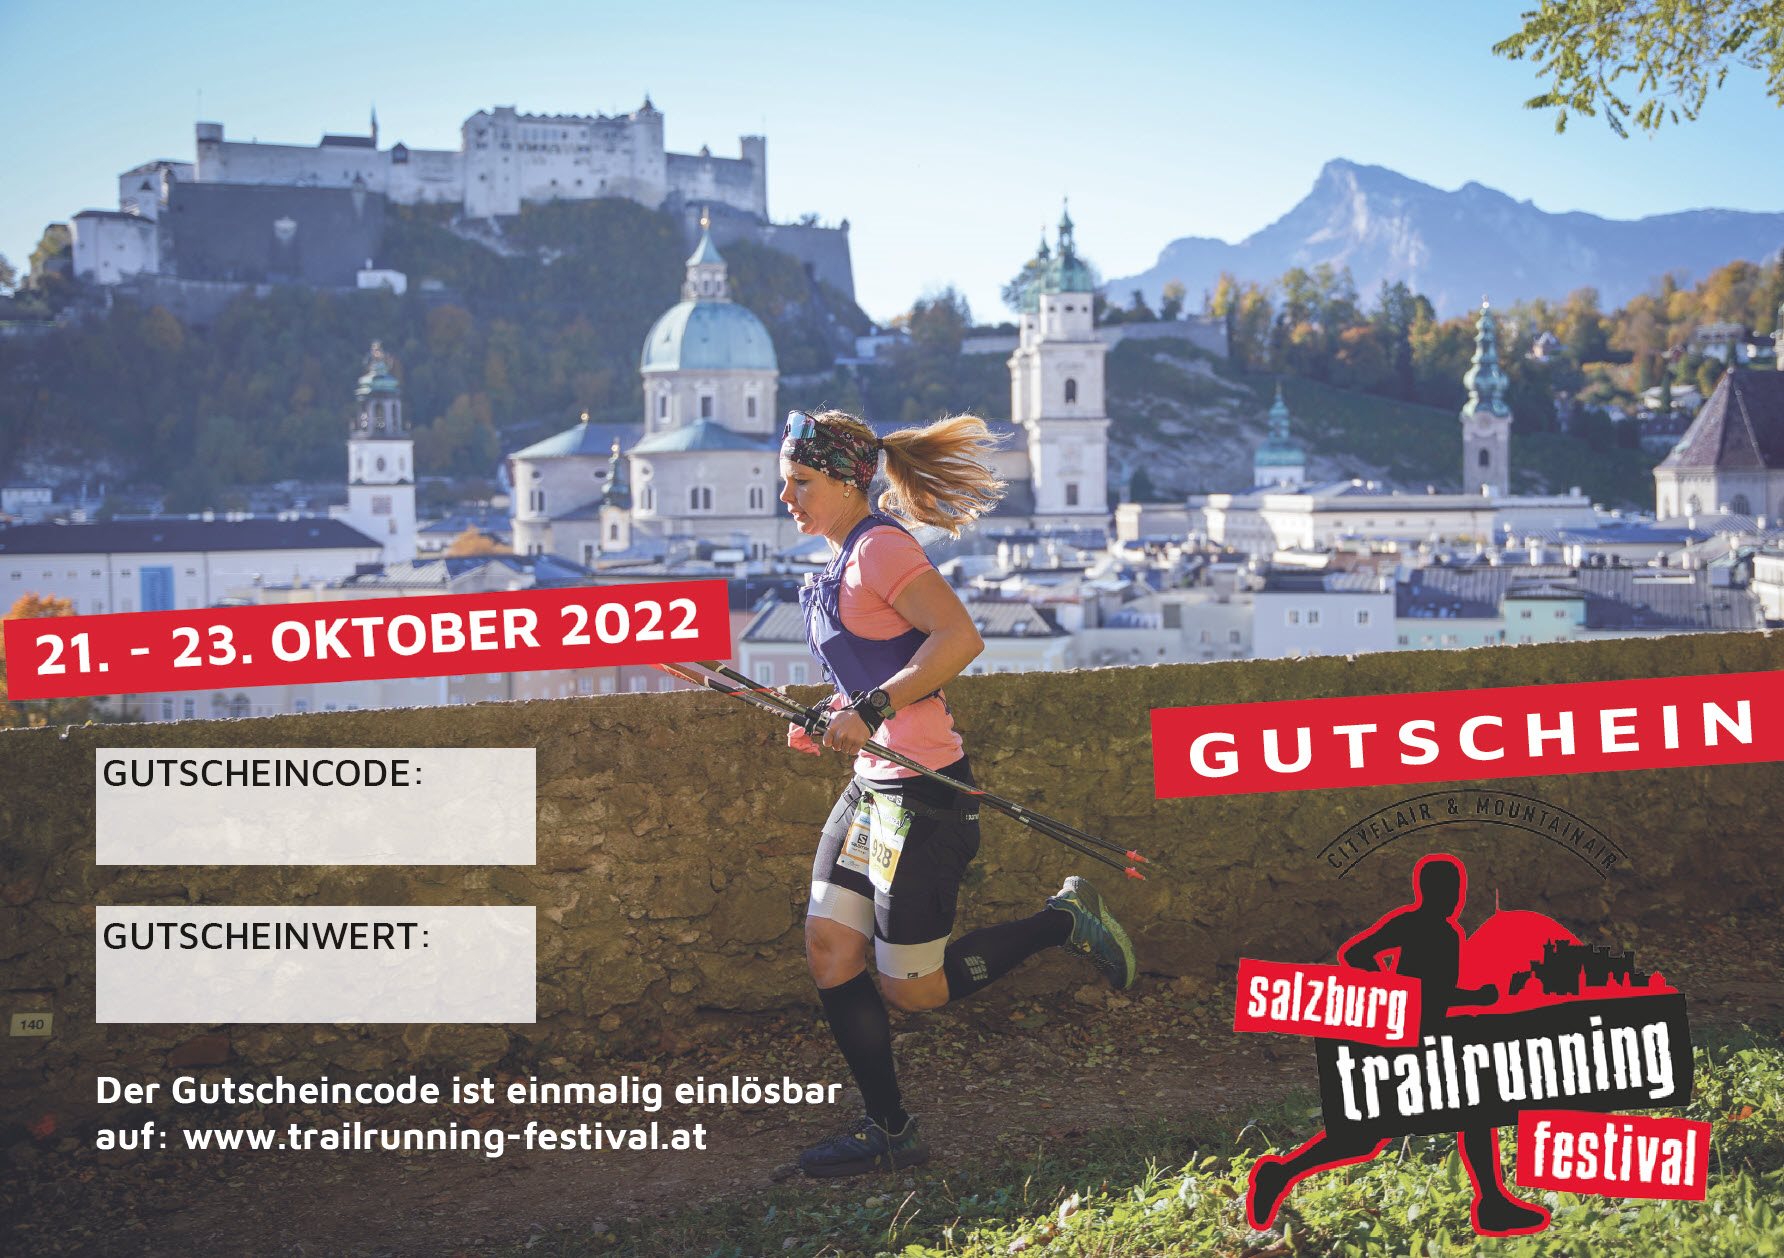 Gutschein Salzburg Trailrunning Festival